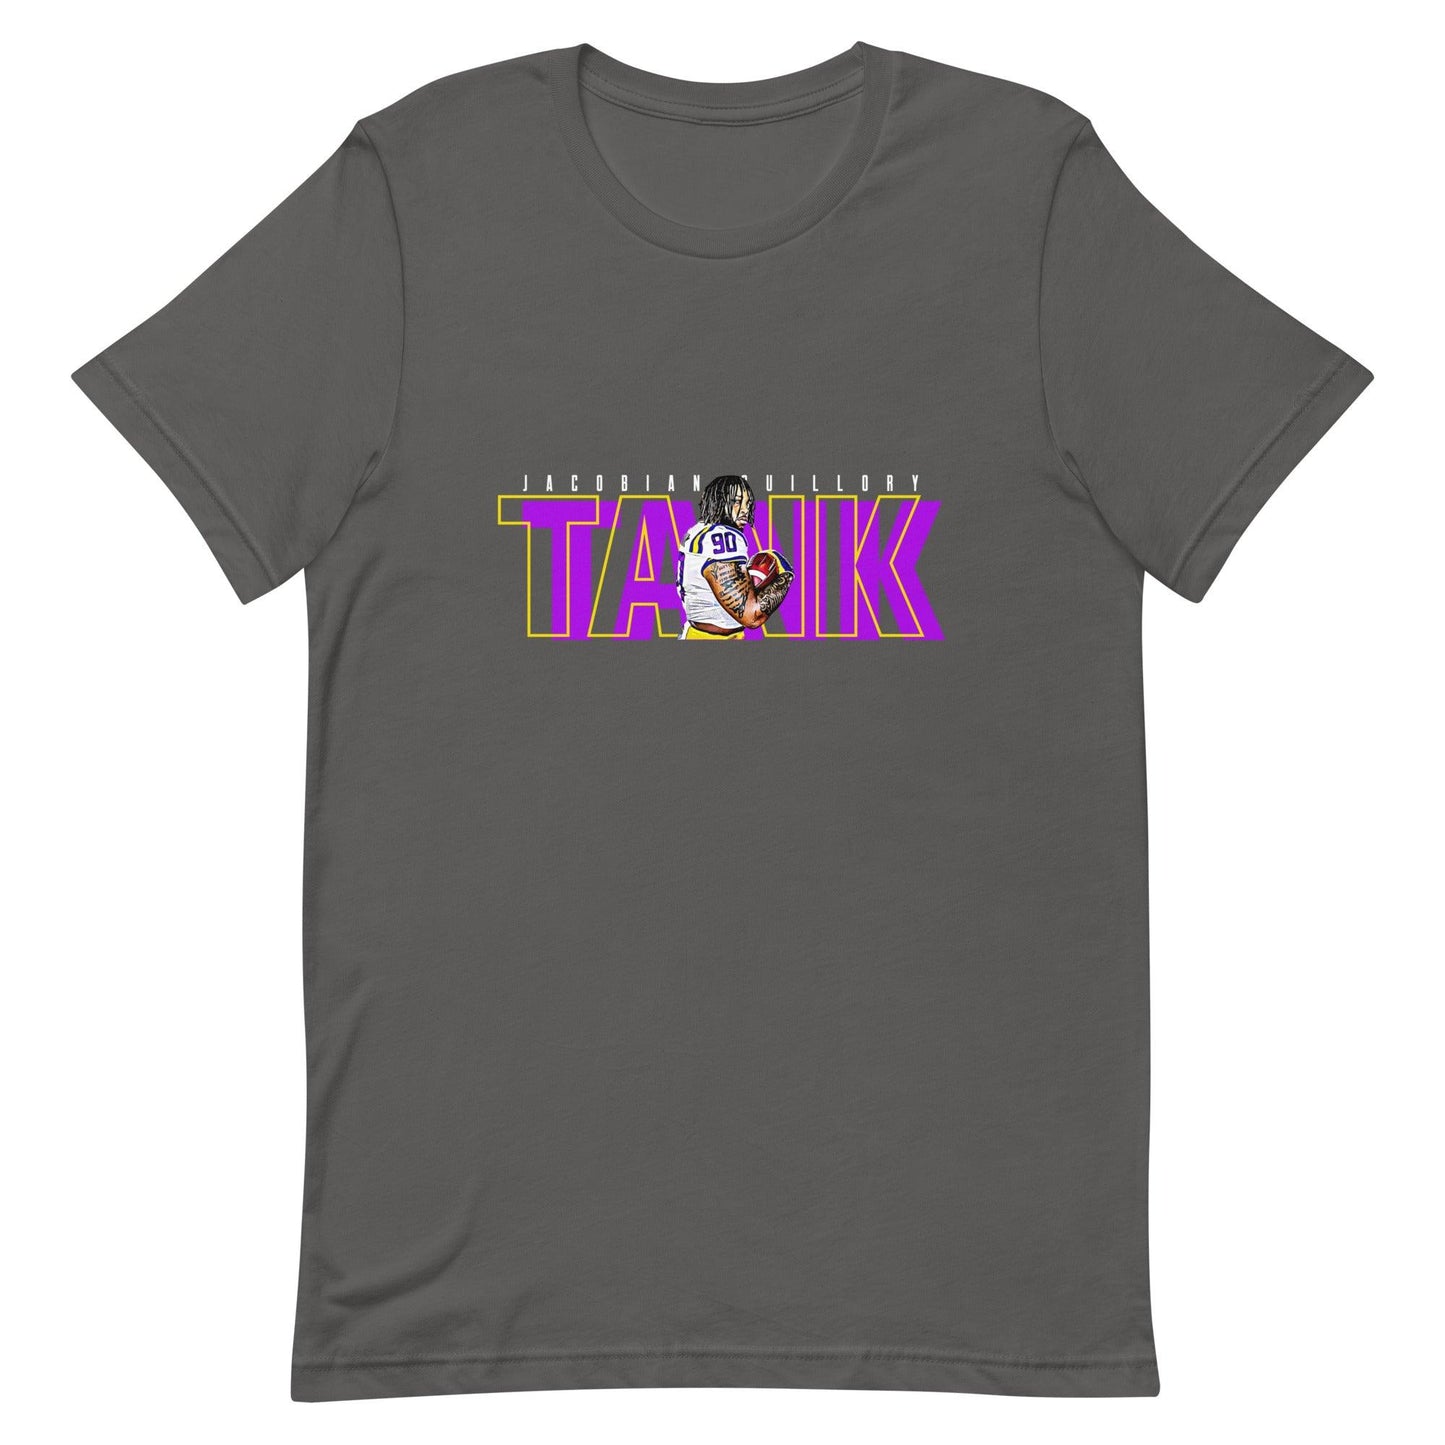 Jacobian Guillory "TANK" t-shirt - Fan Arch